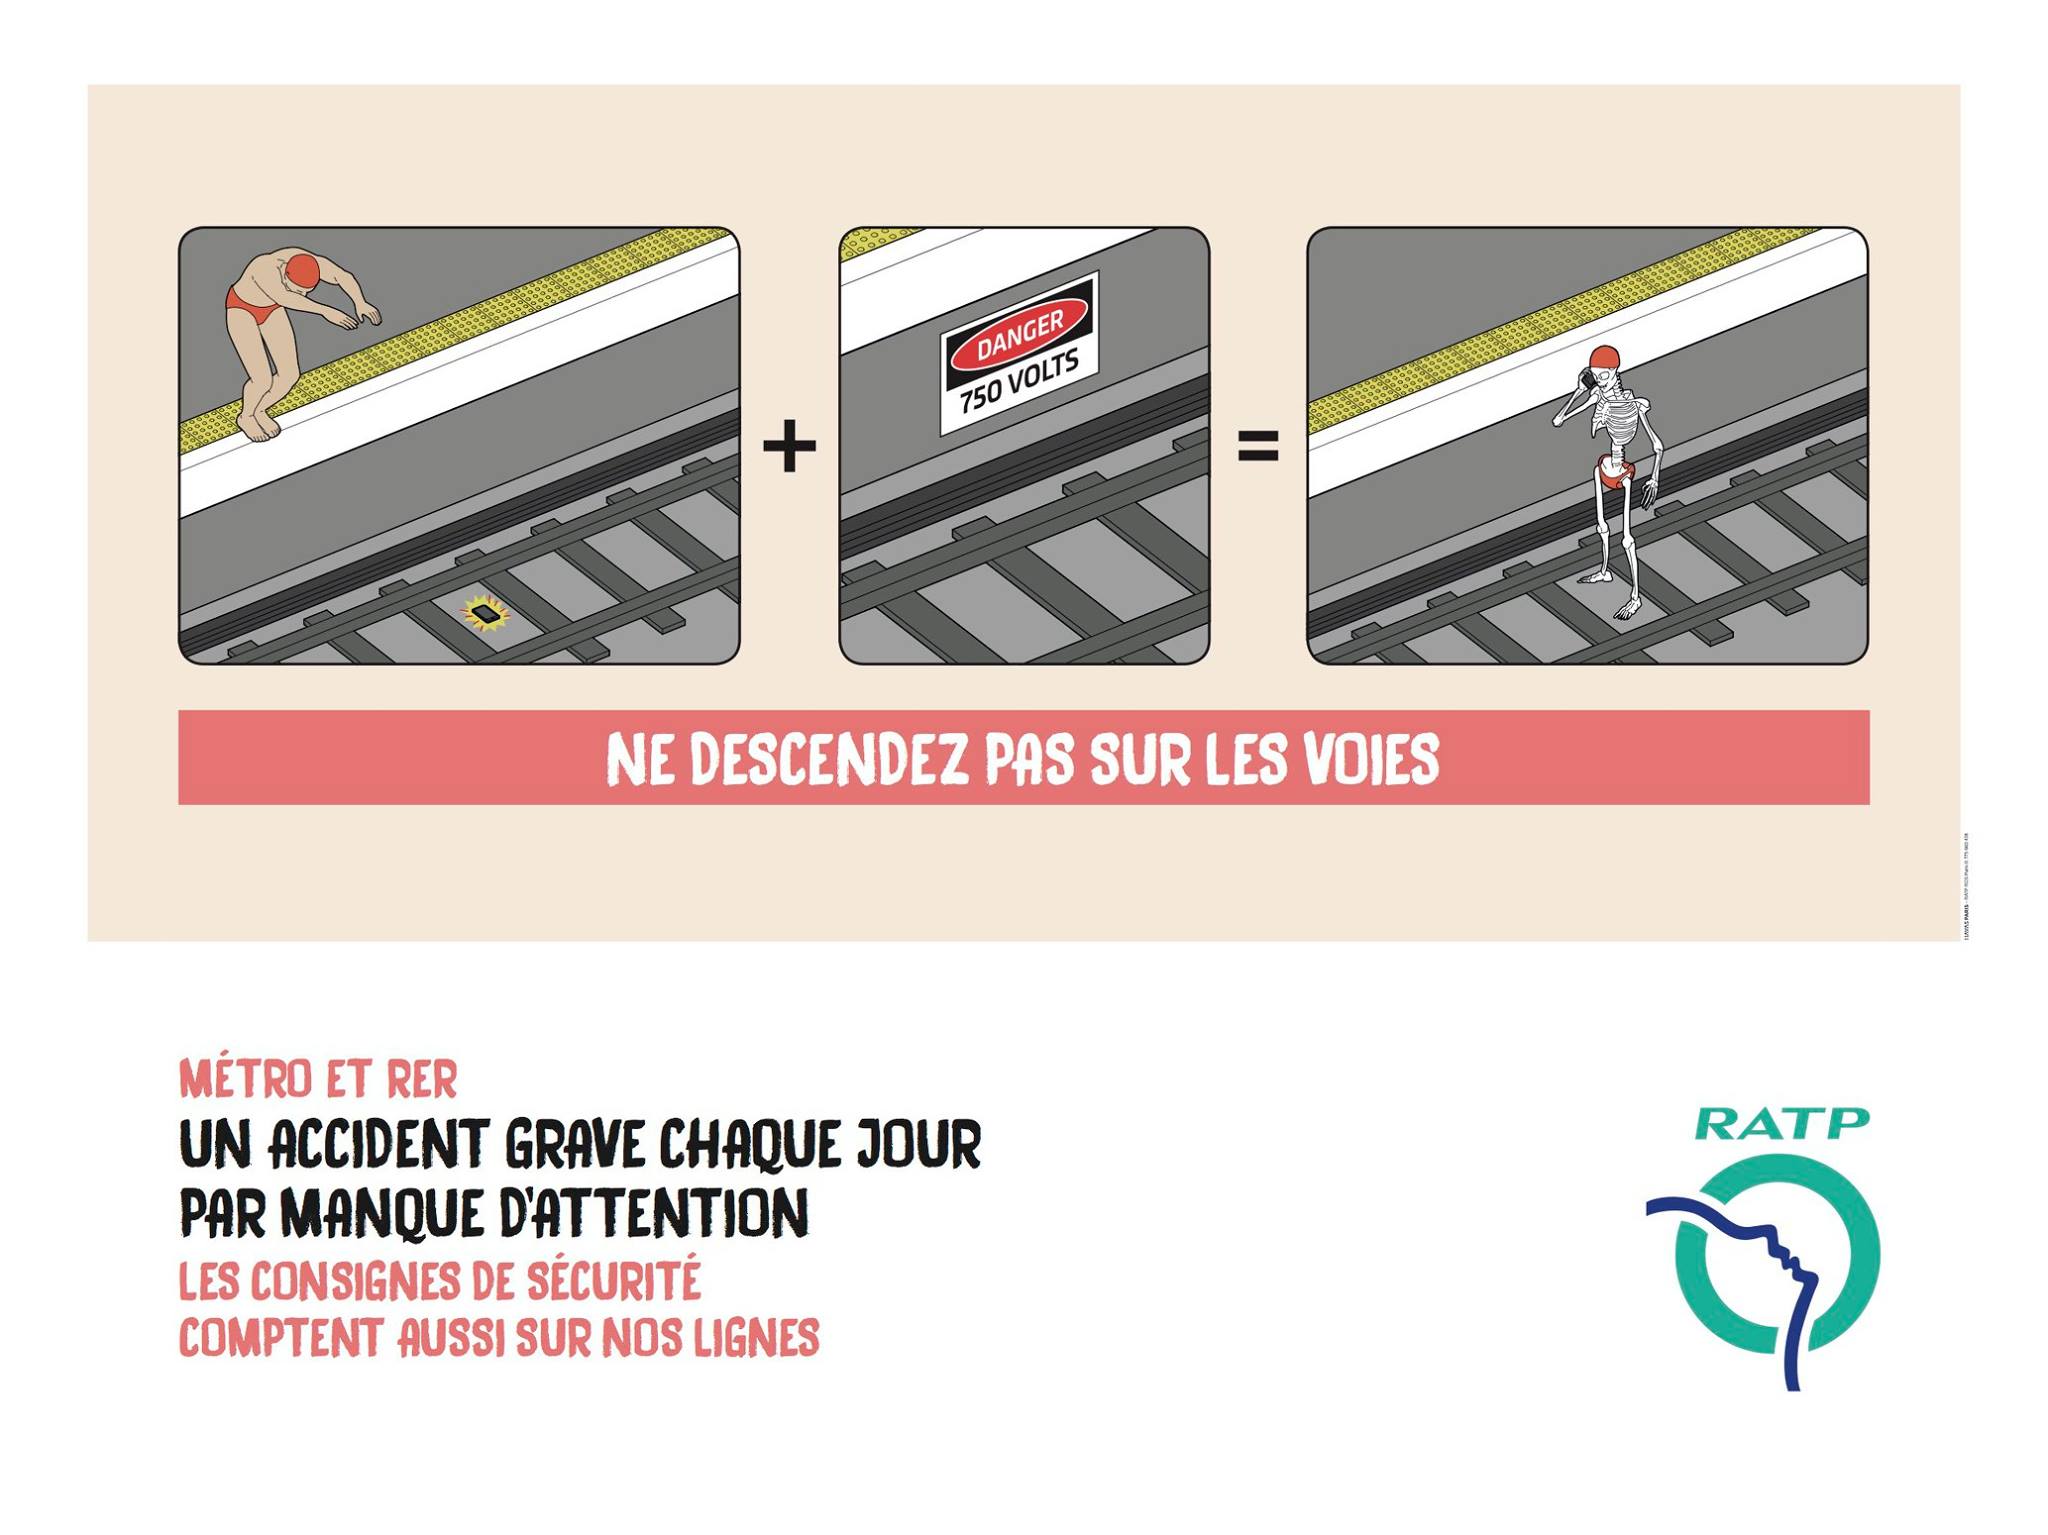 ratp-metro-consignes-securite-2016-publicite-danger-havas-paris-5